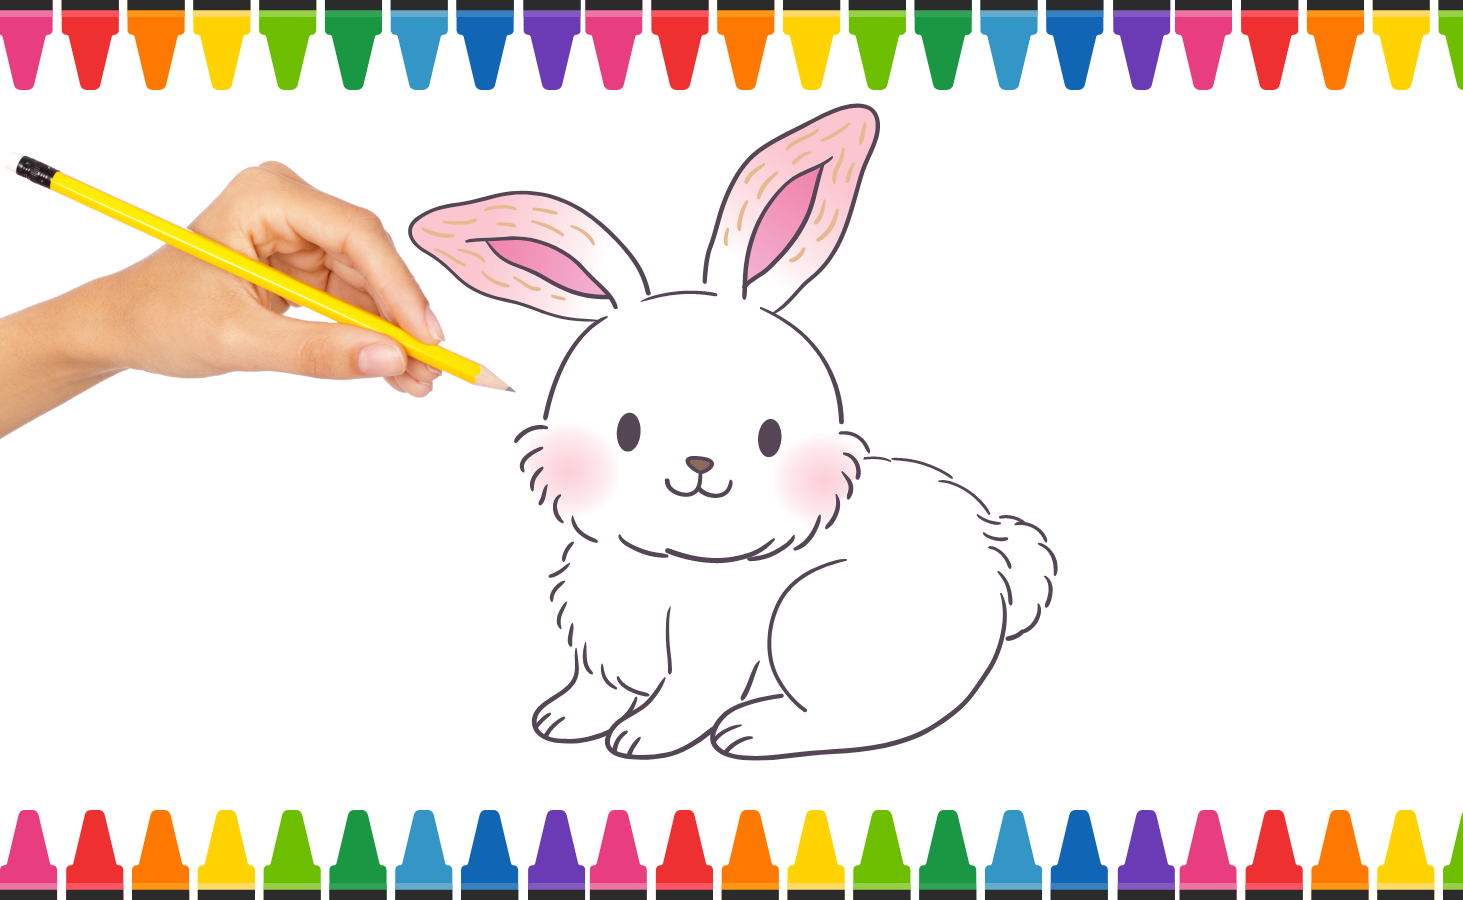 Tổng Hợp 20+ Cách Vẽ Con Thỏ Đơn Giản Cho Người Mới Bắt Đầu